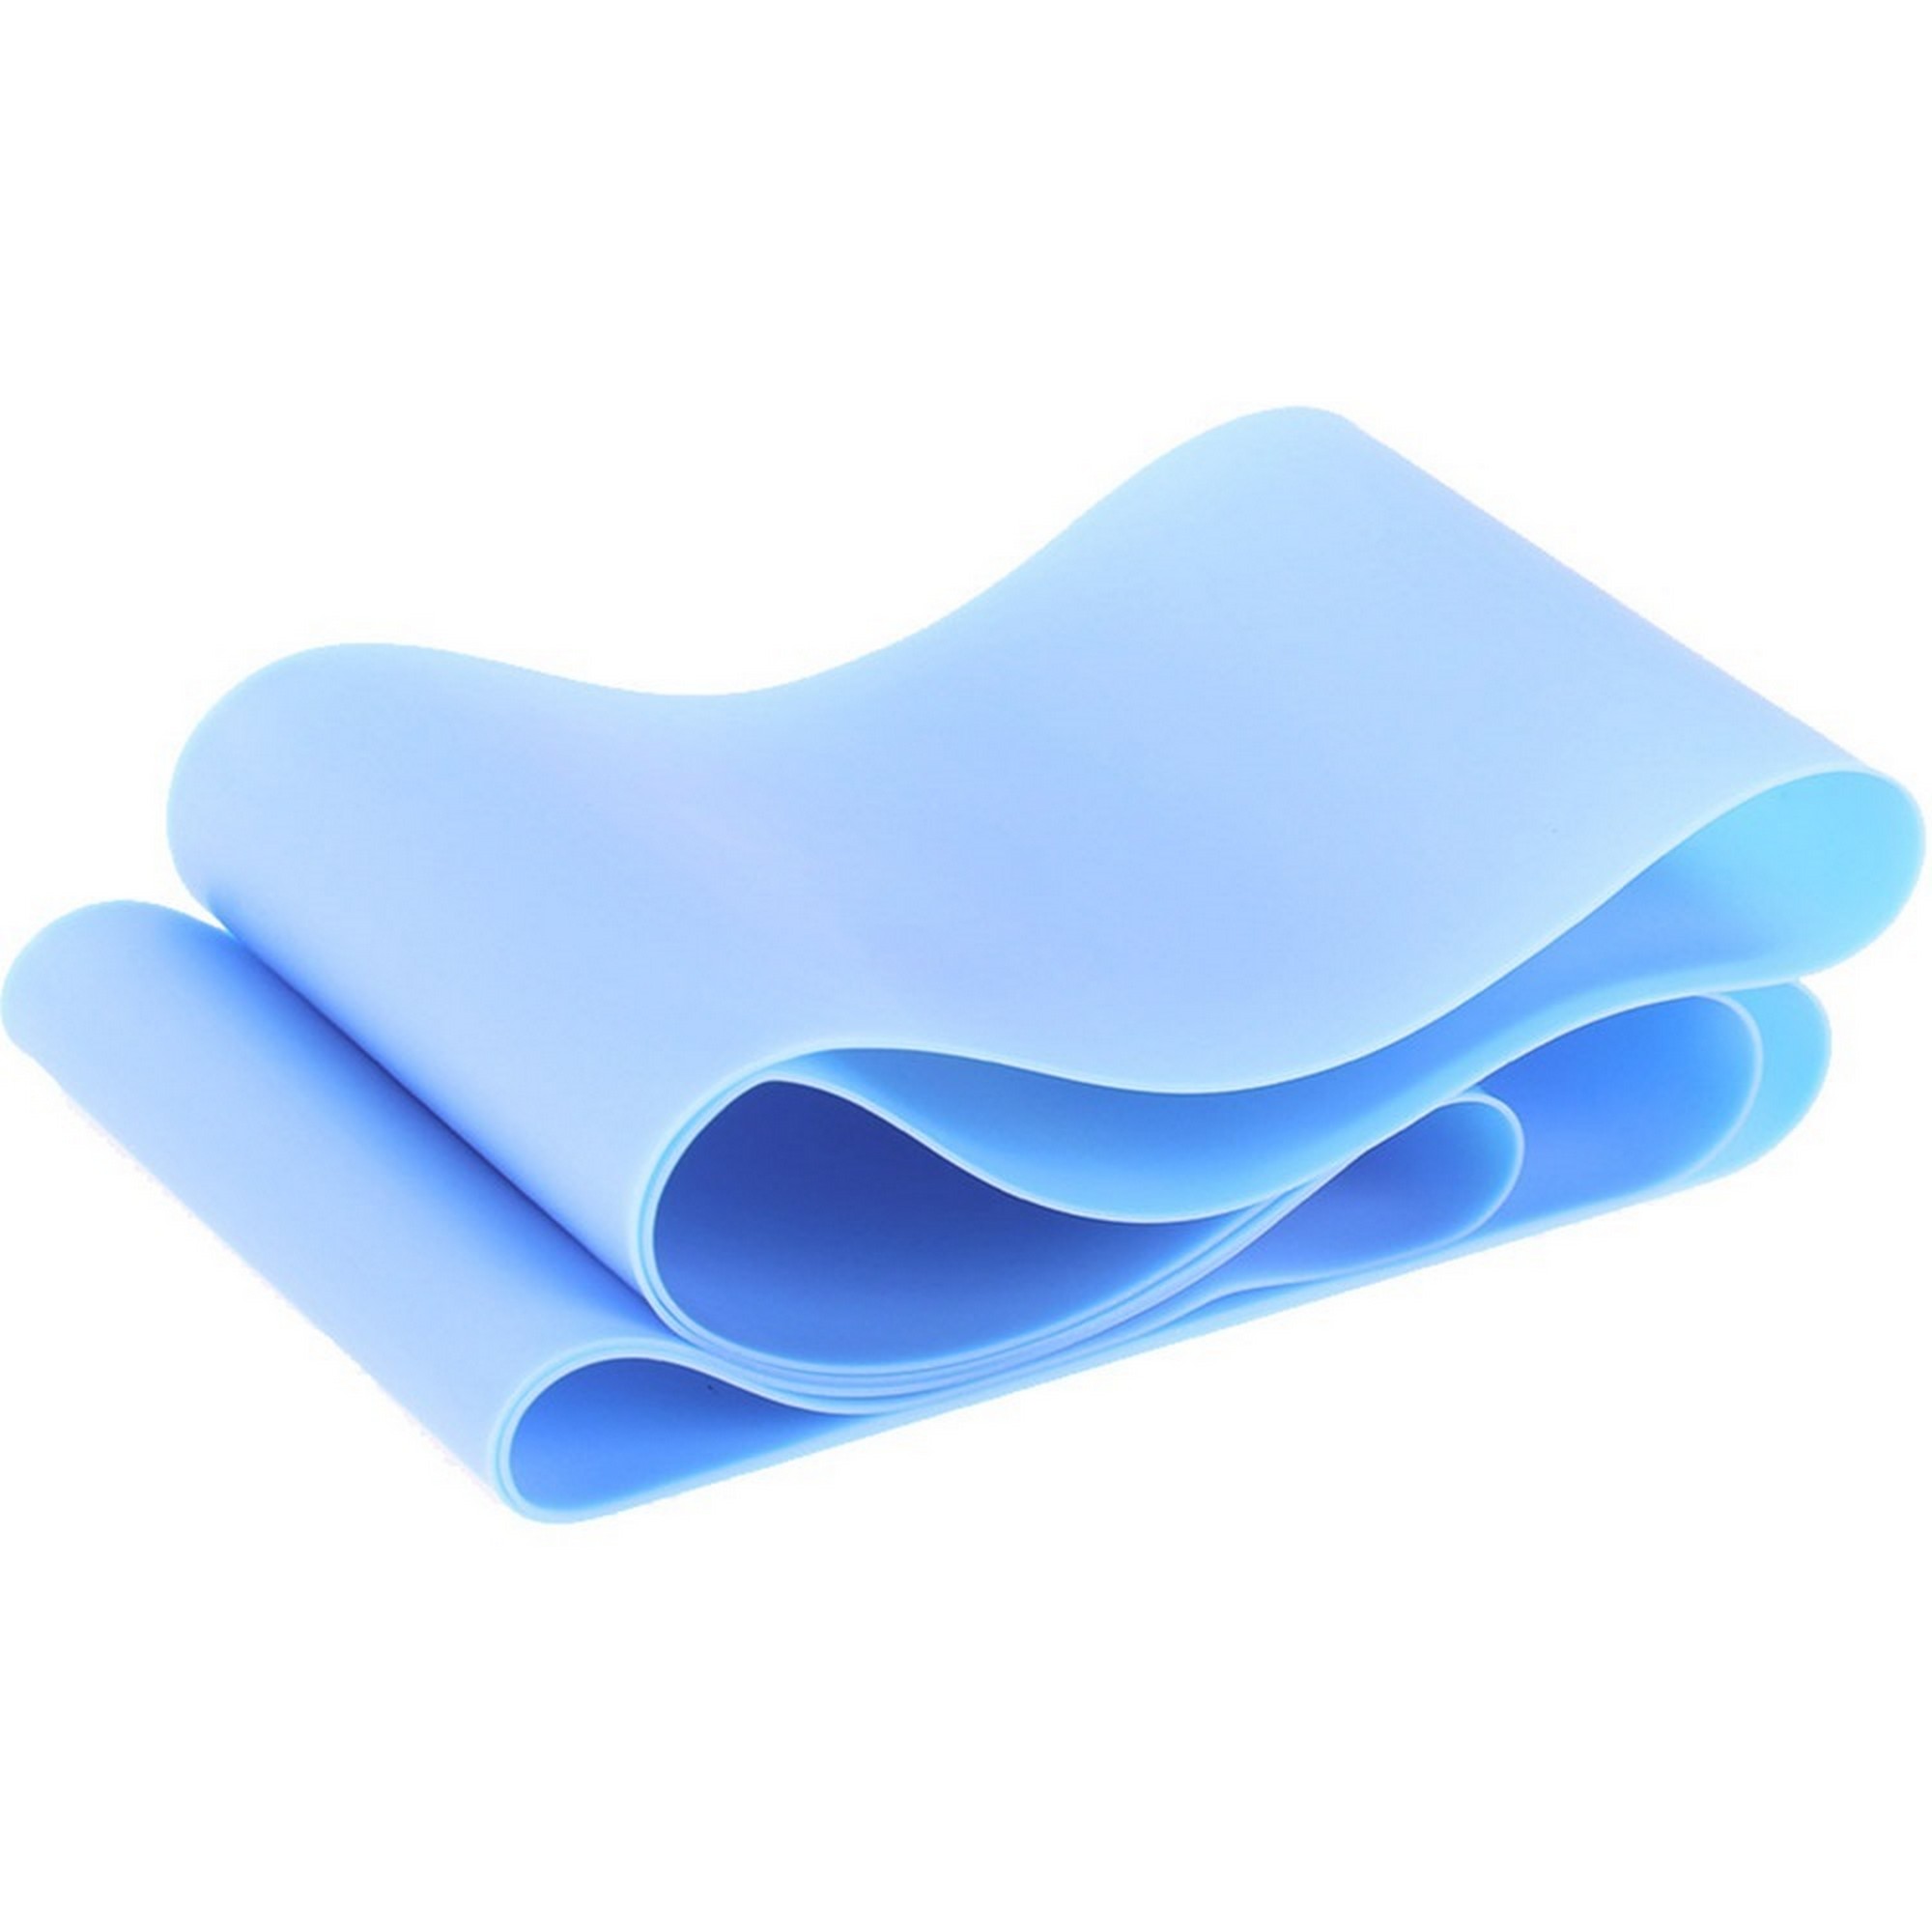 фото Эспандер тпе лента для аэробики 150x15x0,045см sportex mtpl-150-45d синий